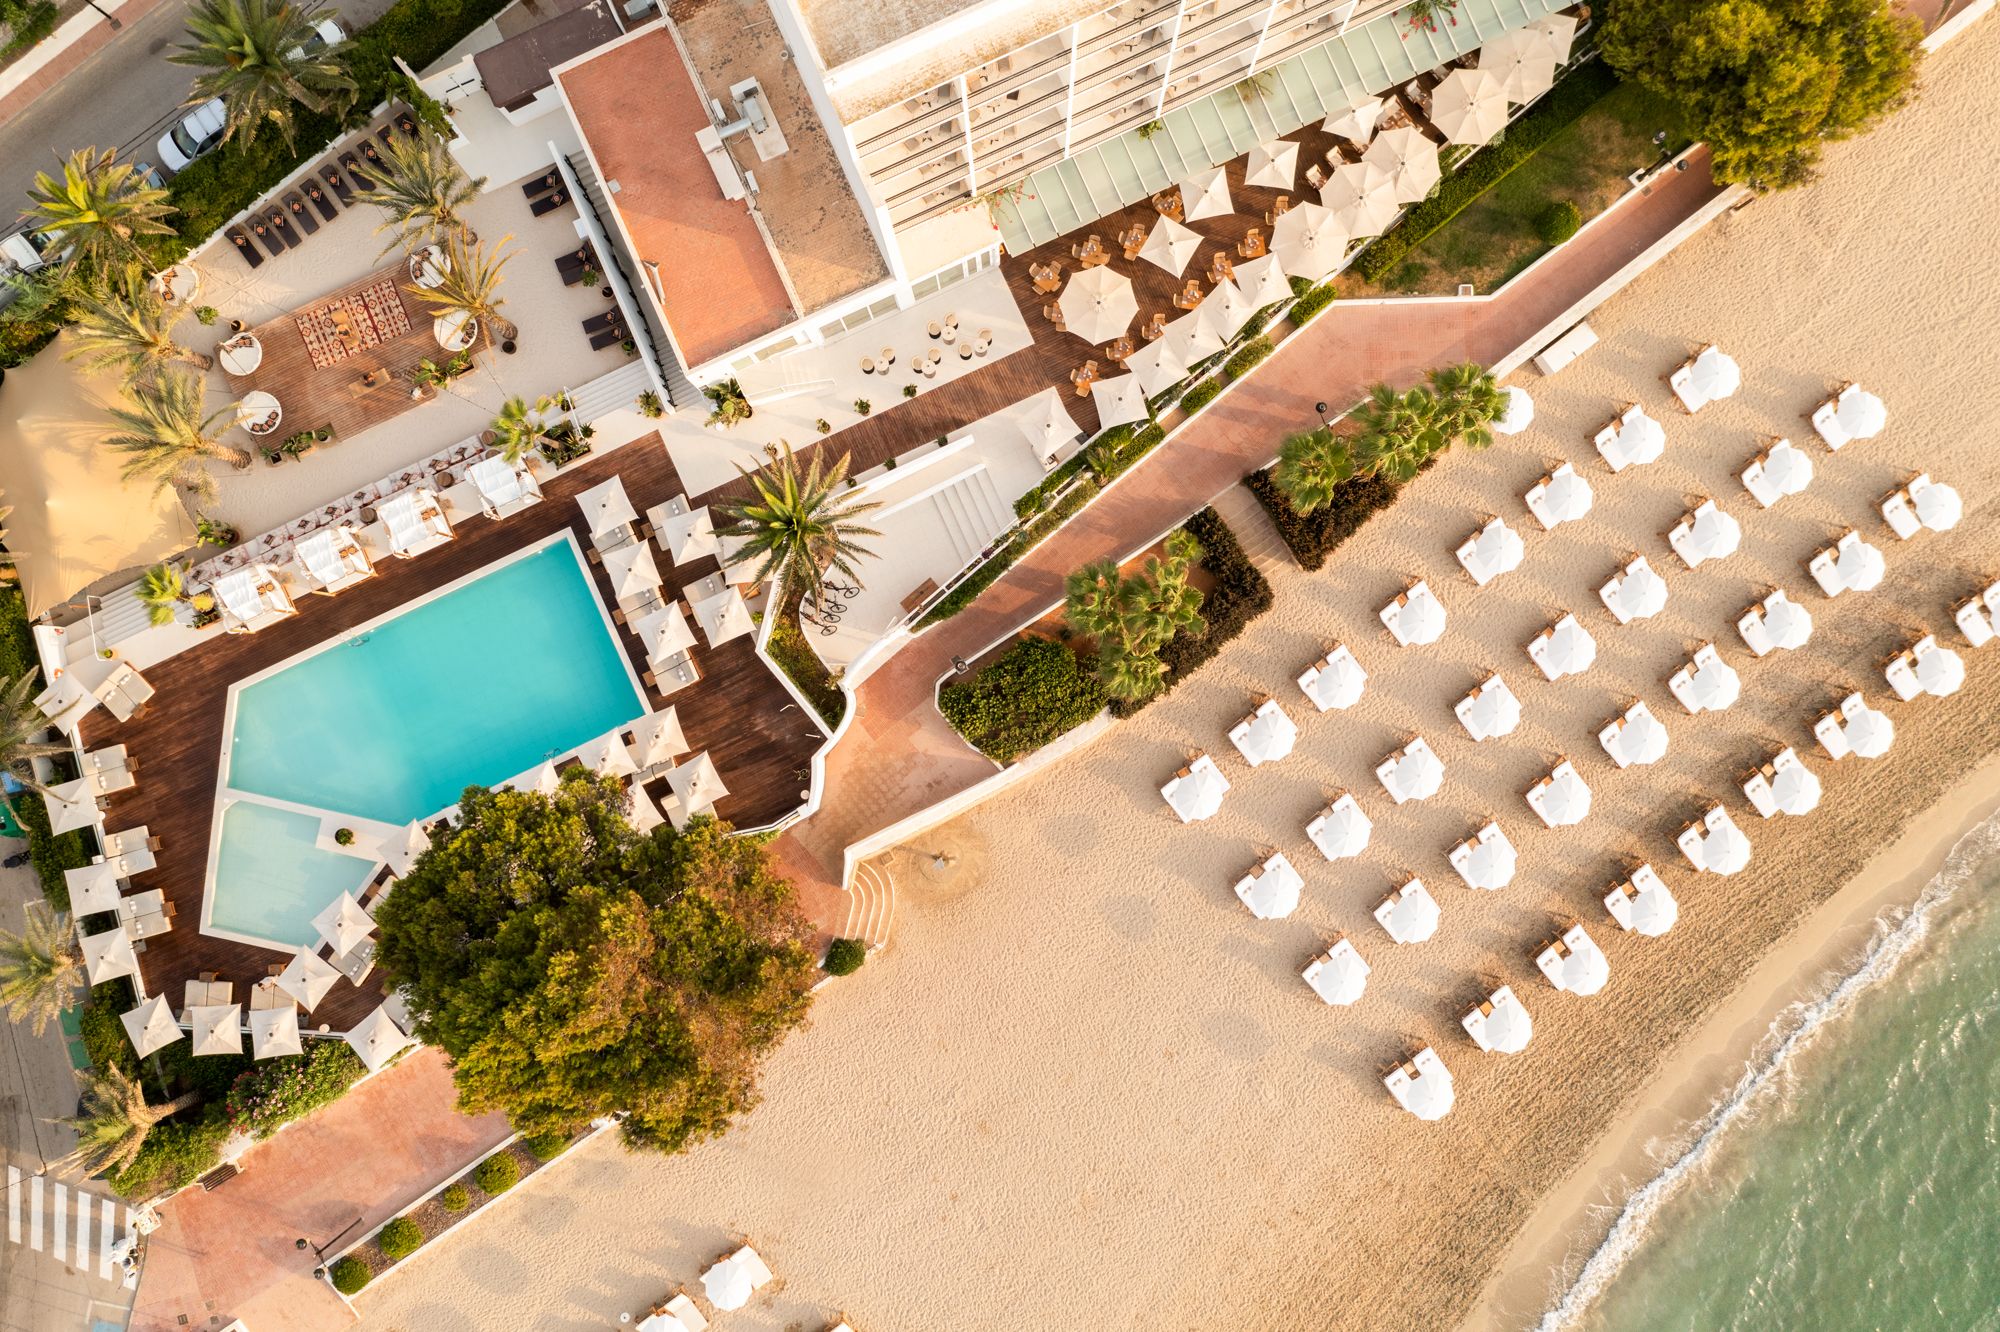 Un hotel con encanto en Ibiza, situado a la orilla del mar en el tranquilo municipio de Santa Eulalia.